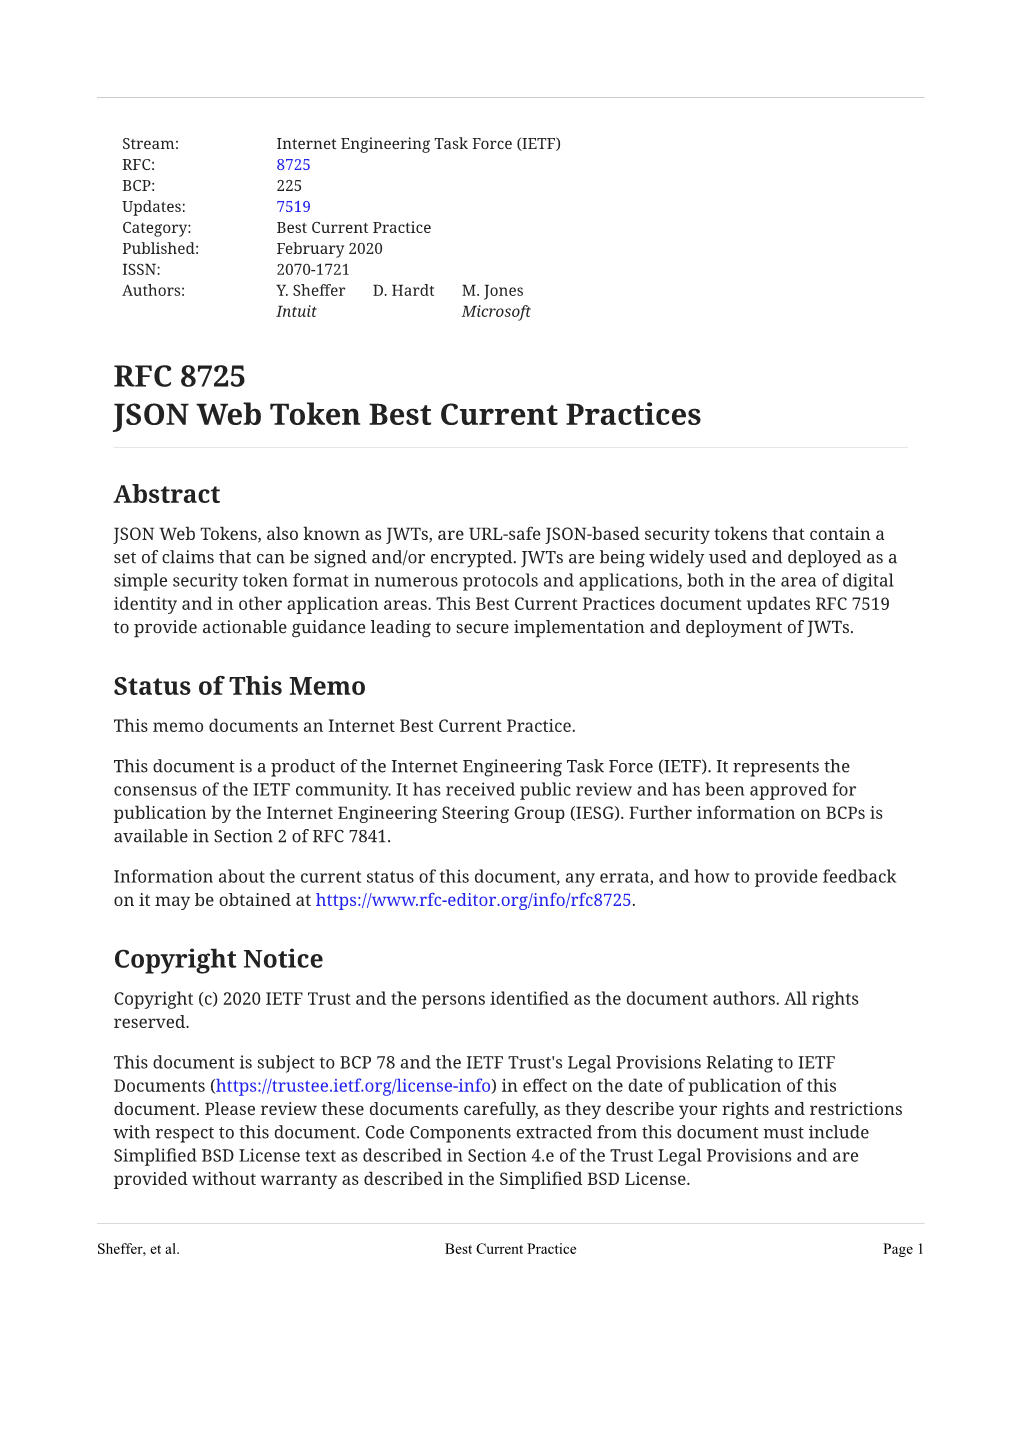 RFC 8725: JSON Web Token Best Current Practices